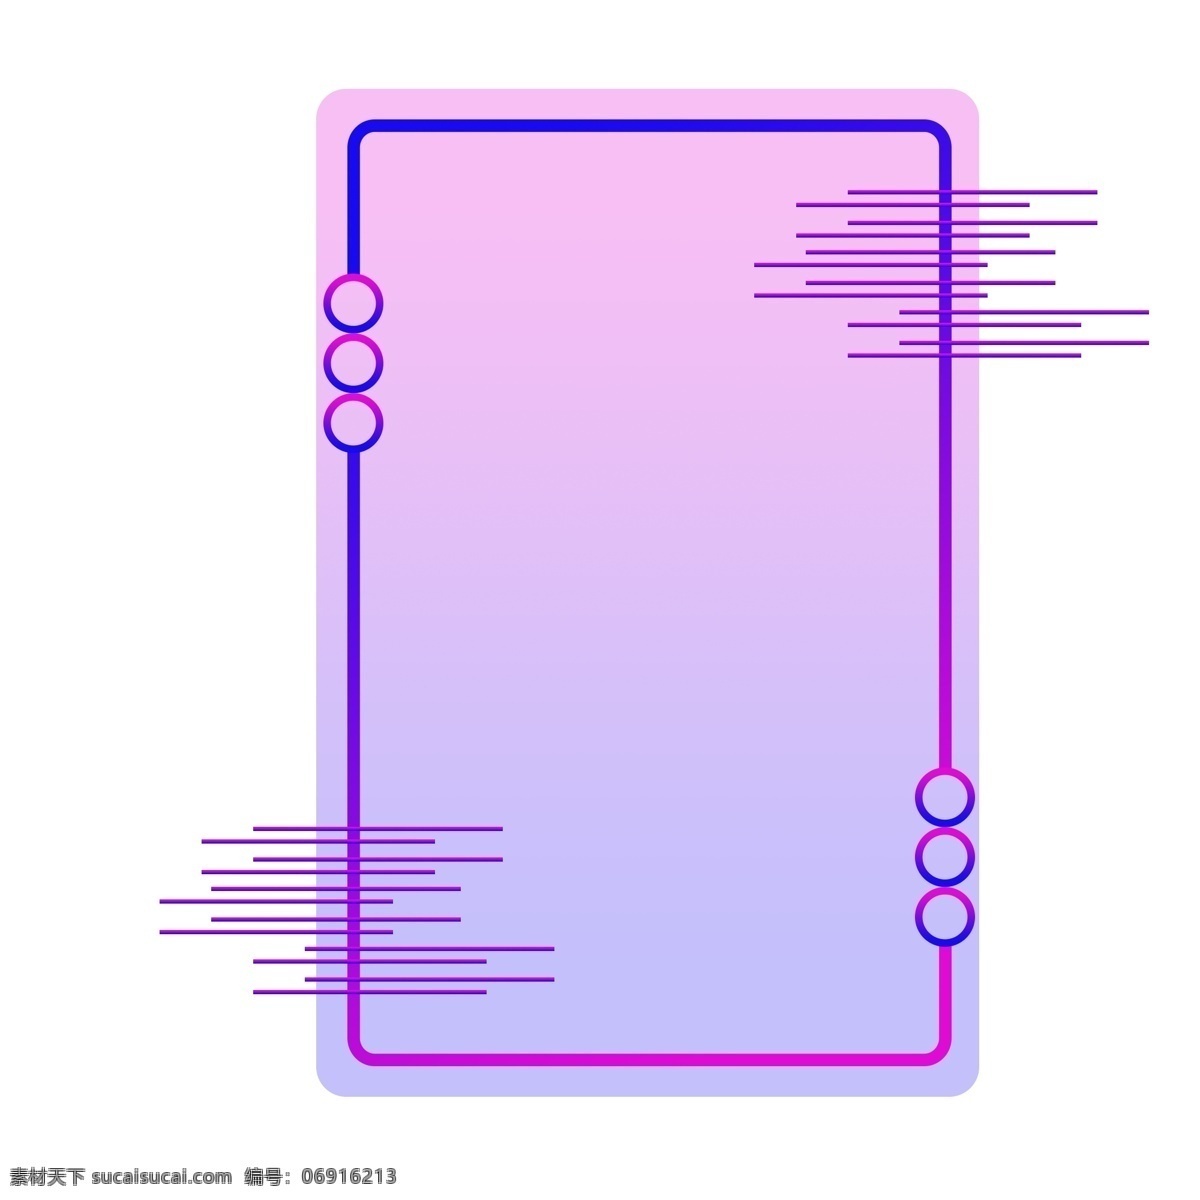 蓝紫色 渐变 纹理 边框 长方形 商用 简约 蓝色 紫色 科技感边框 可商用 装饰素材 科技纹理